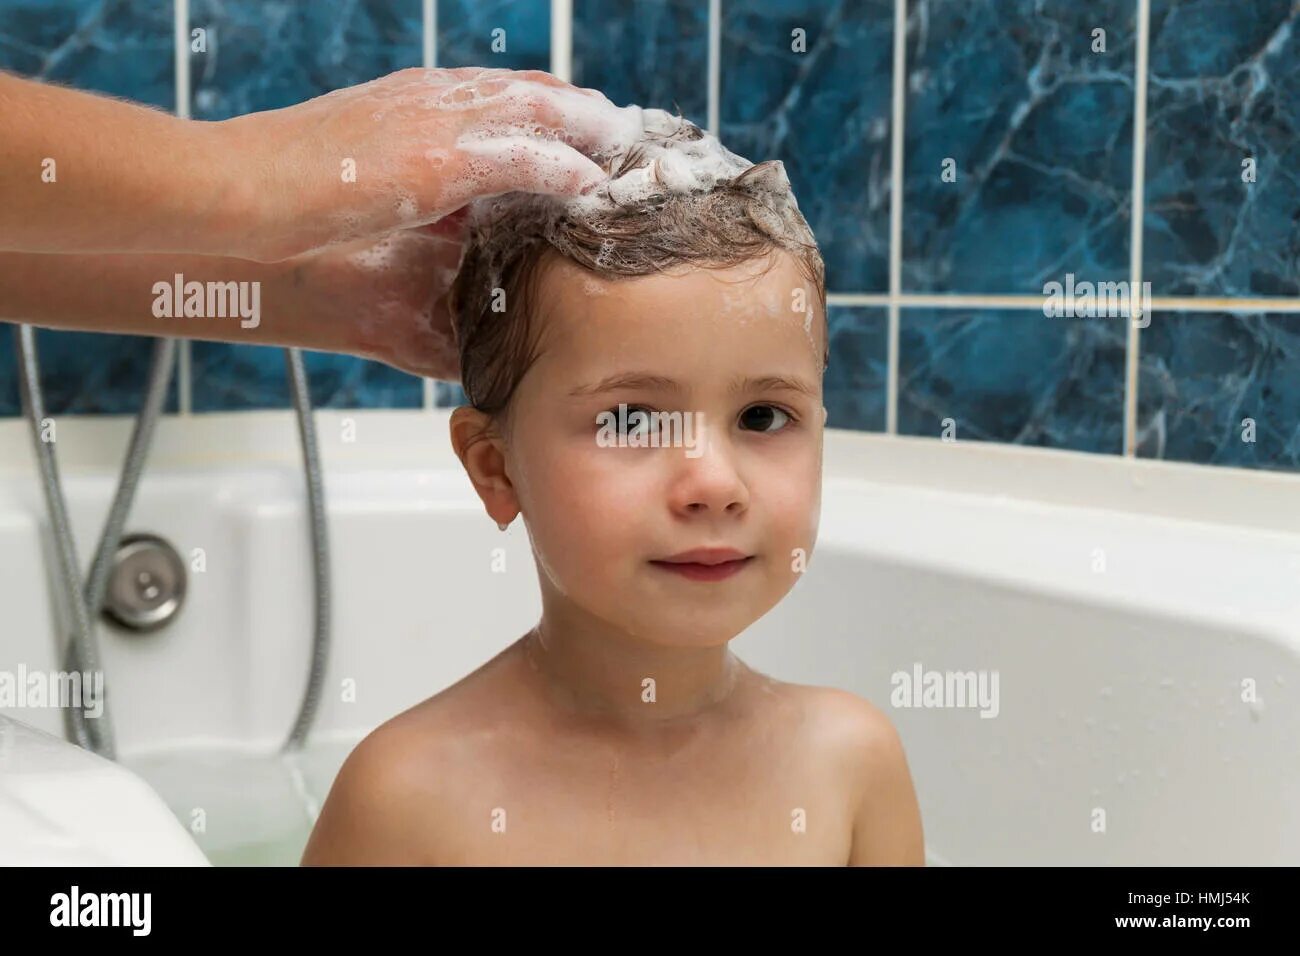 Девочки в ванной мытье головы. Мальчик моется с девочкой. Ребенок моет волосы. Мальчик моет голову. Моет сына в душе